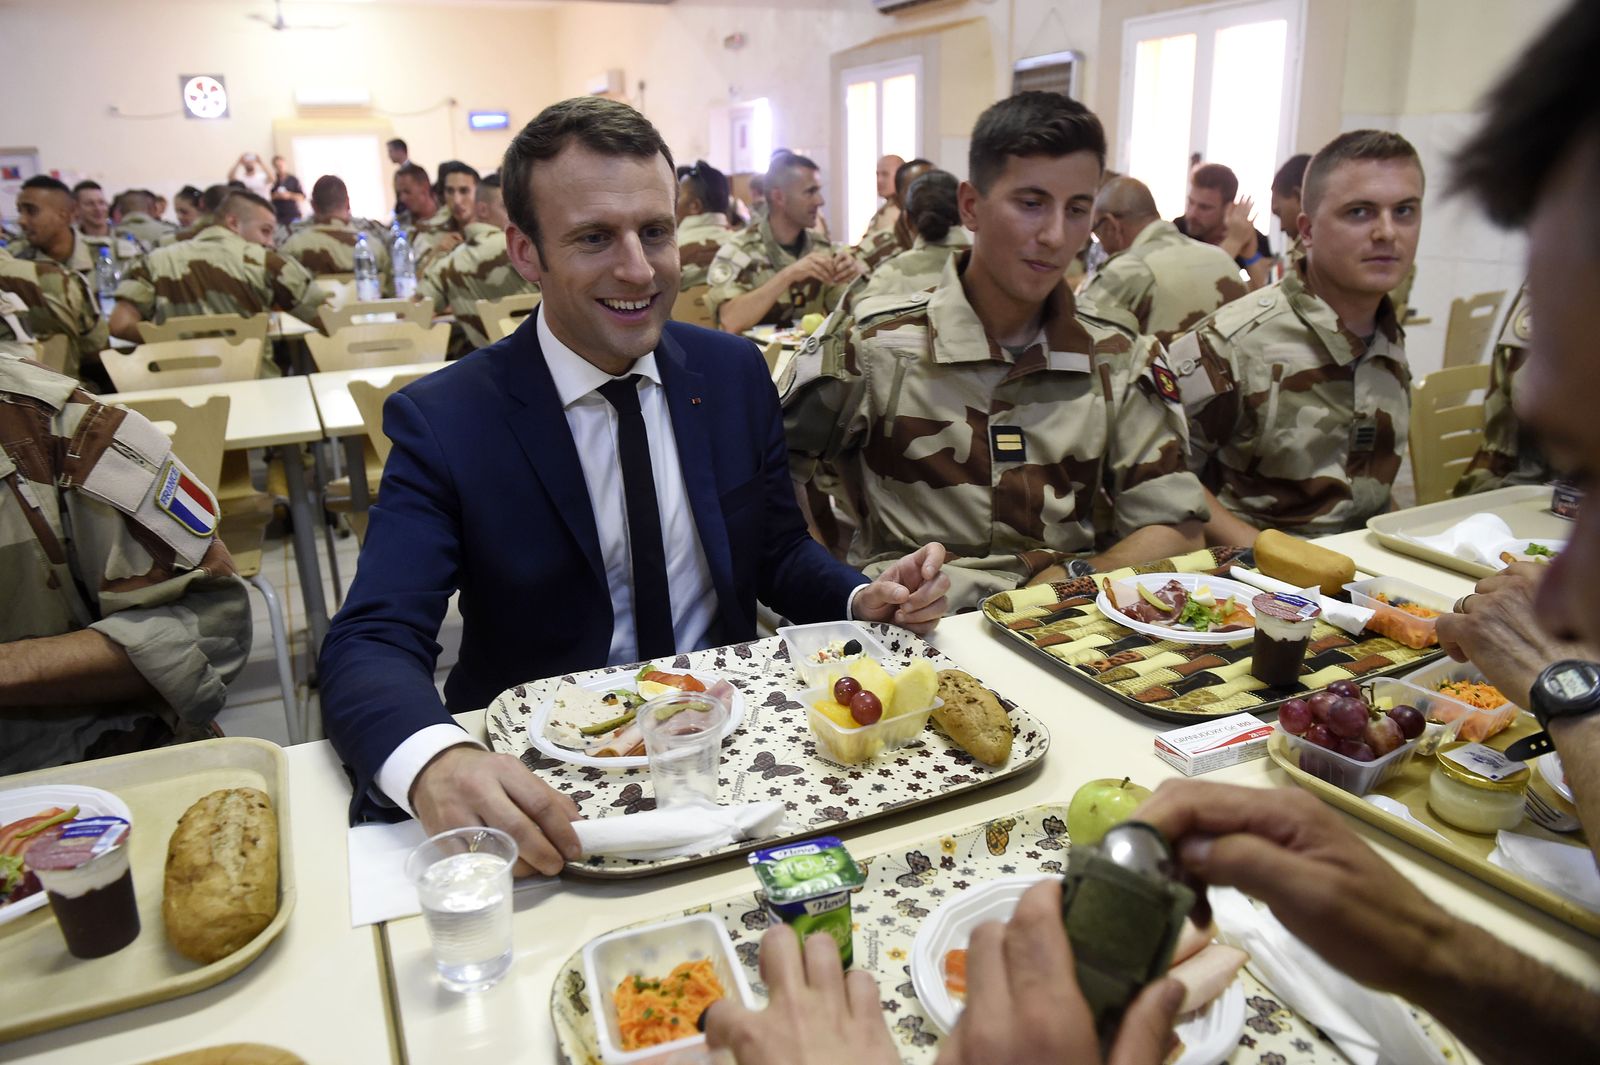 الرئيس الفرنسي إيمانويل ماكرون يتناول الطعام مع جنود فرنسيين في جاو شمال مالي - 19 مايو 2017 - REUTERS